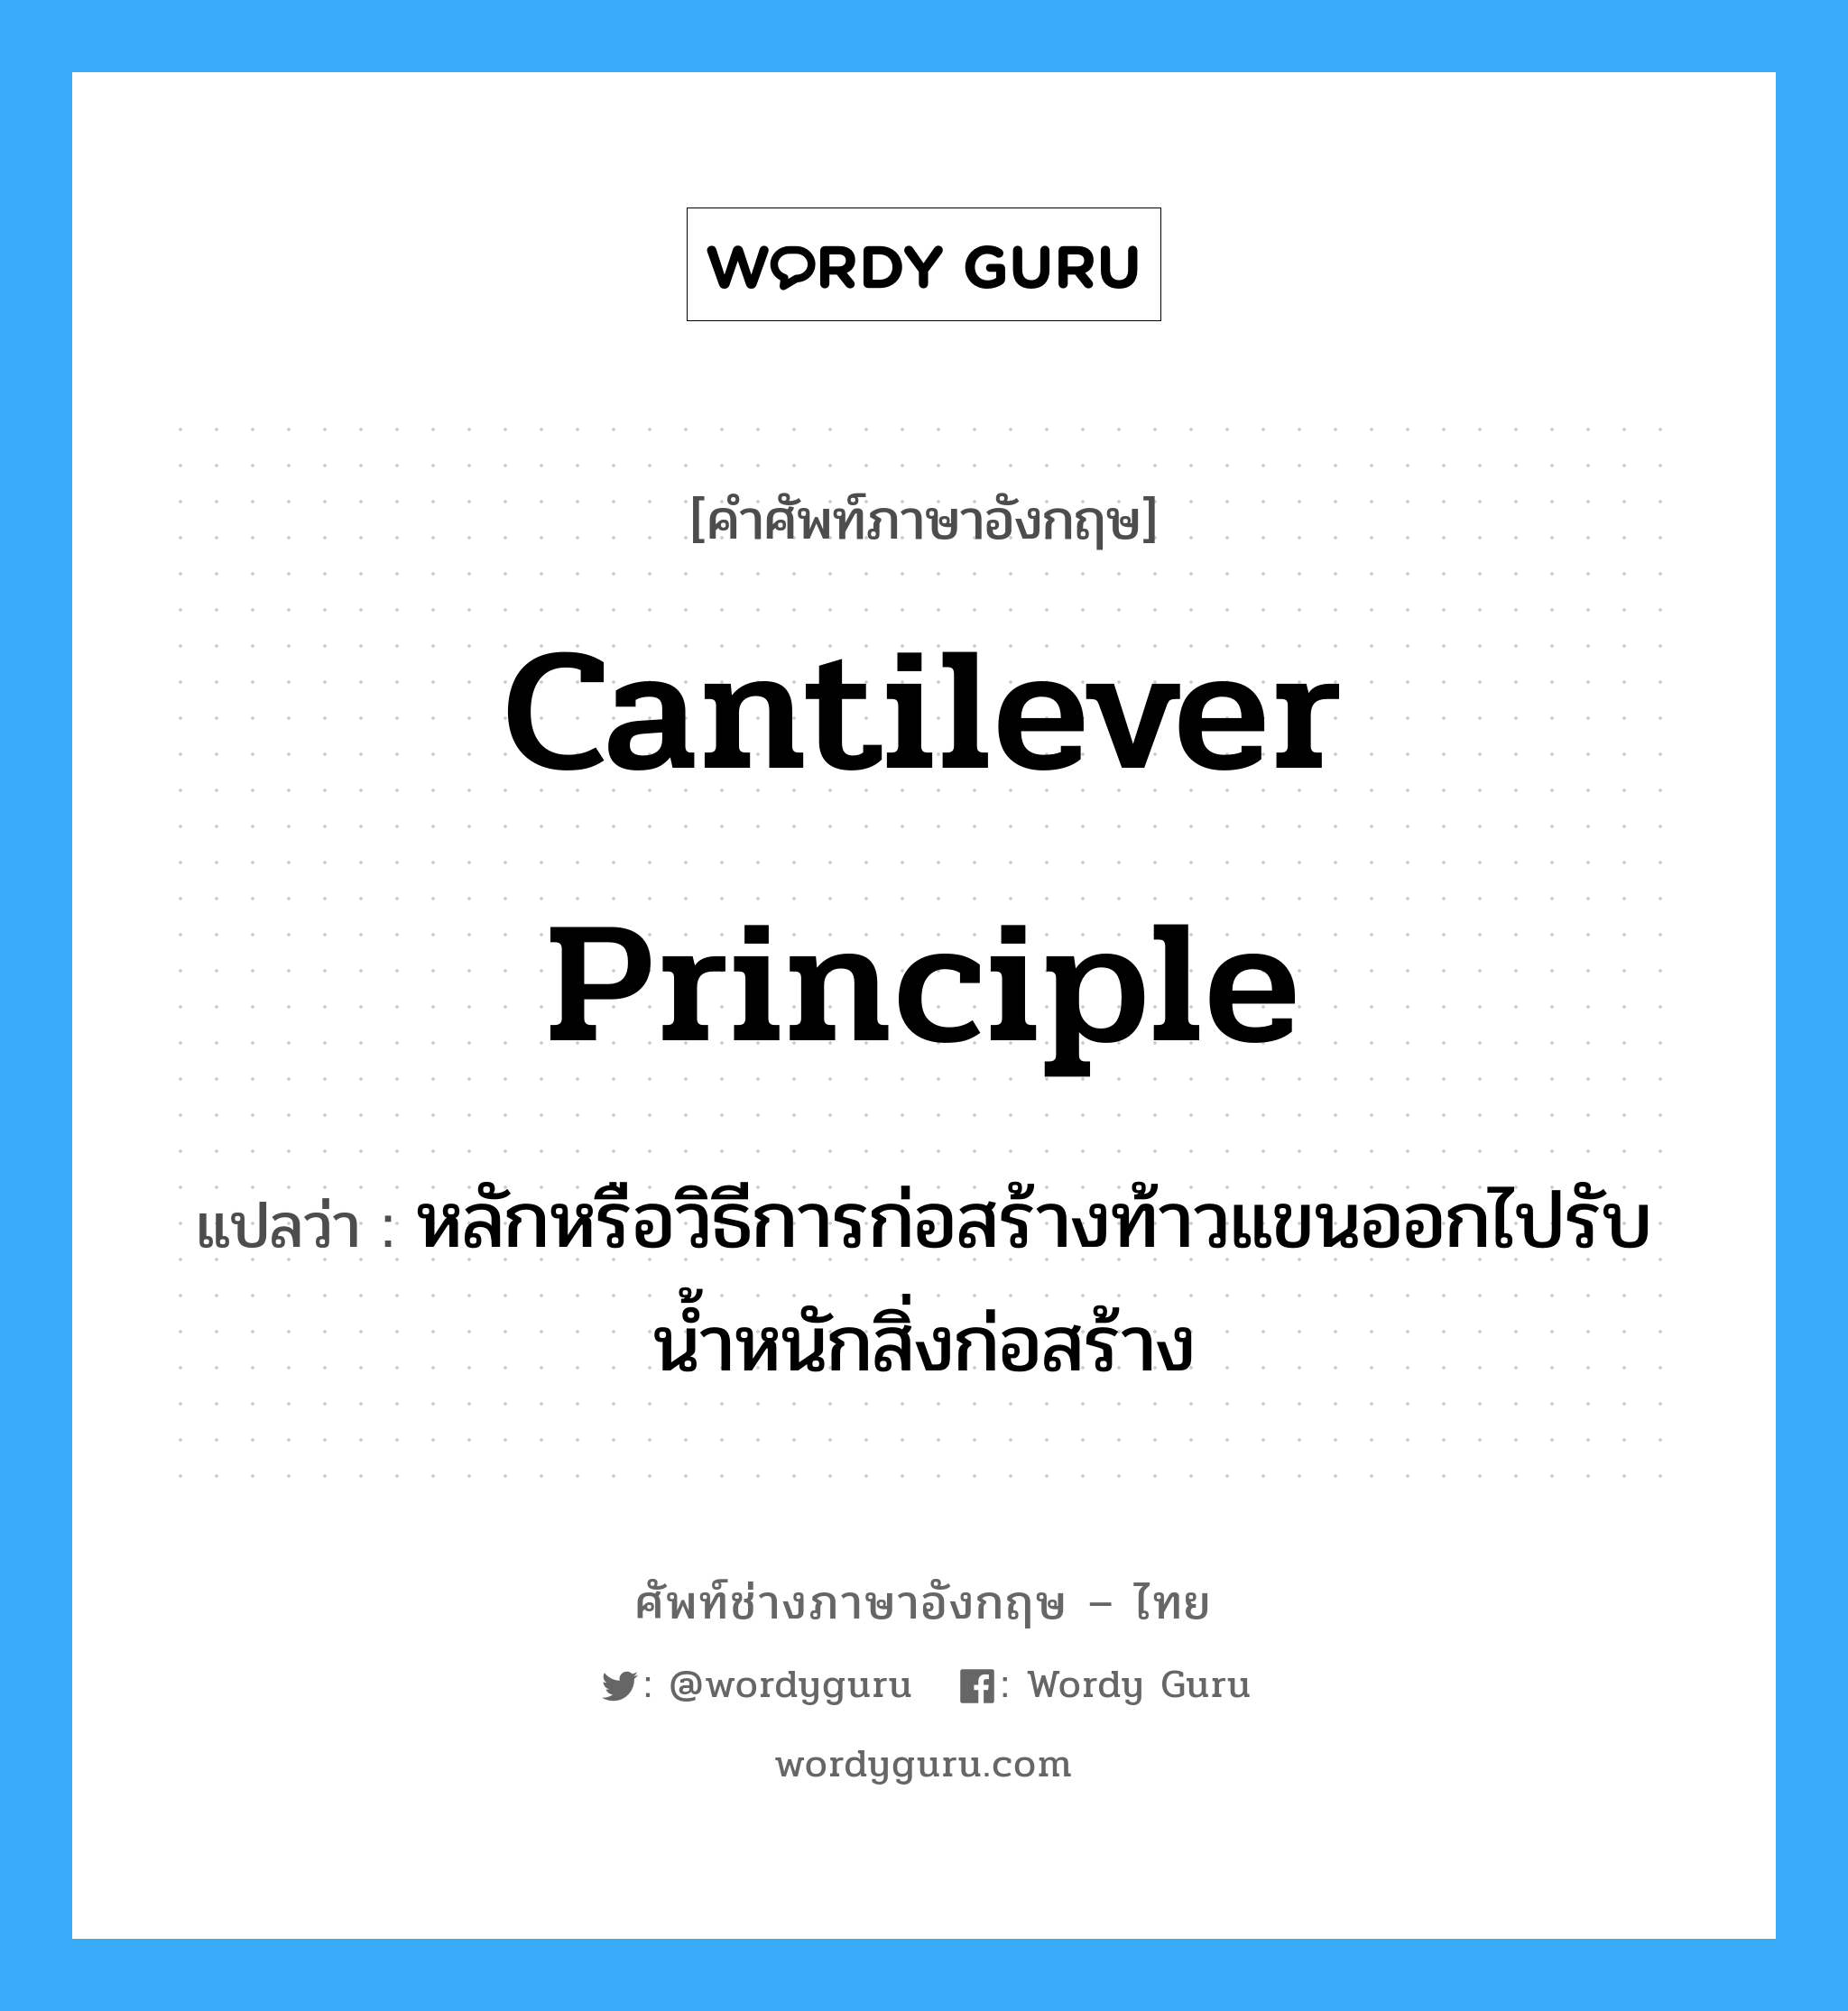 cantilever principle แปลว่า?, คำศัพท์ช่างภาษาอังกฤษ - ไทย cantilever principle คำศัพท์ภาษาอังกฤษ cantilever principle แปลว่า หลักหรือวิธีการก่อสร้างท้าวแขนออกไปรับน้ำหนักสิ่งก่อสร้าง